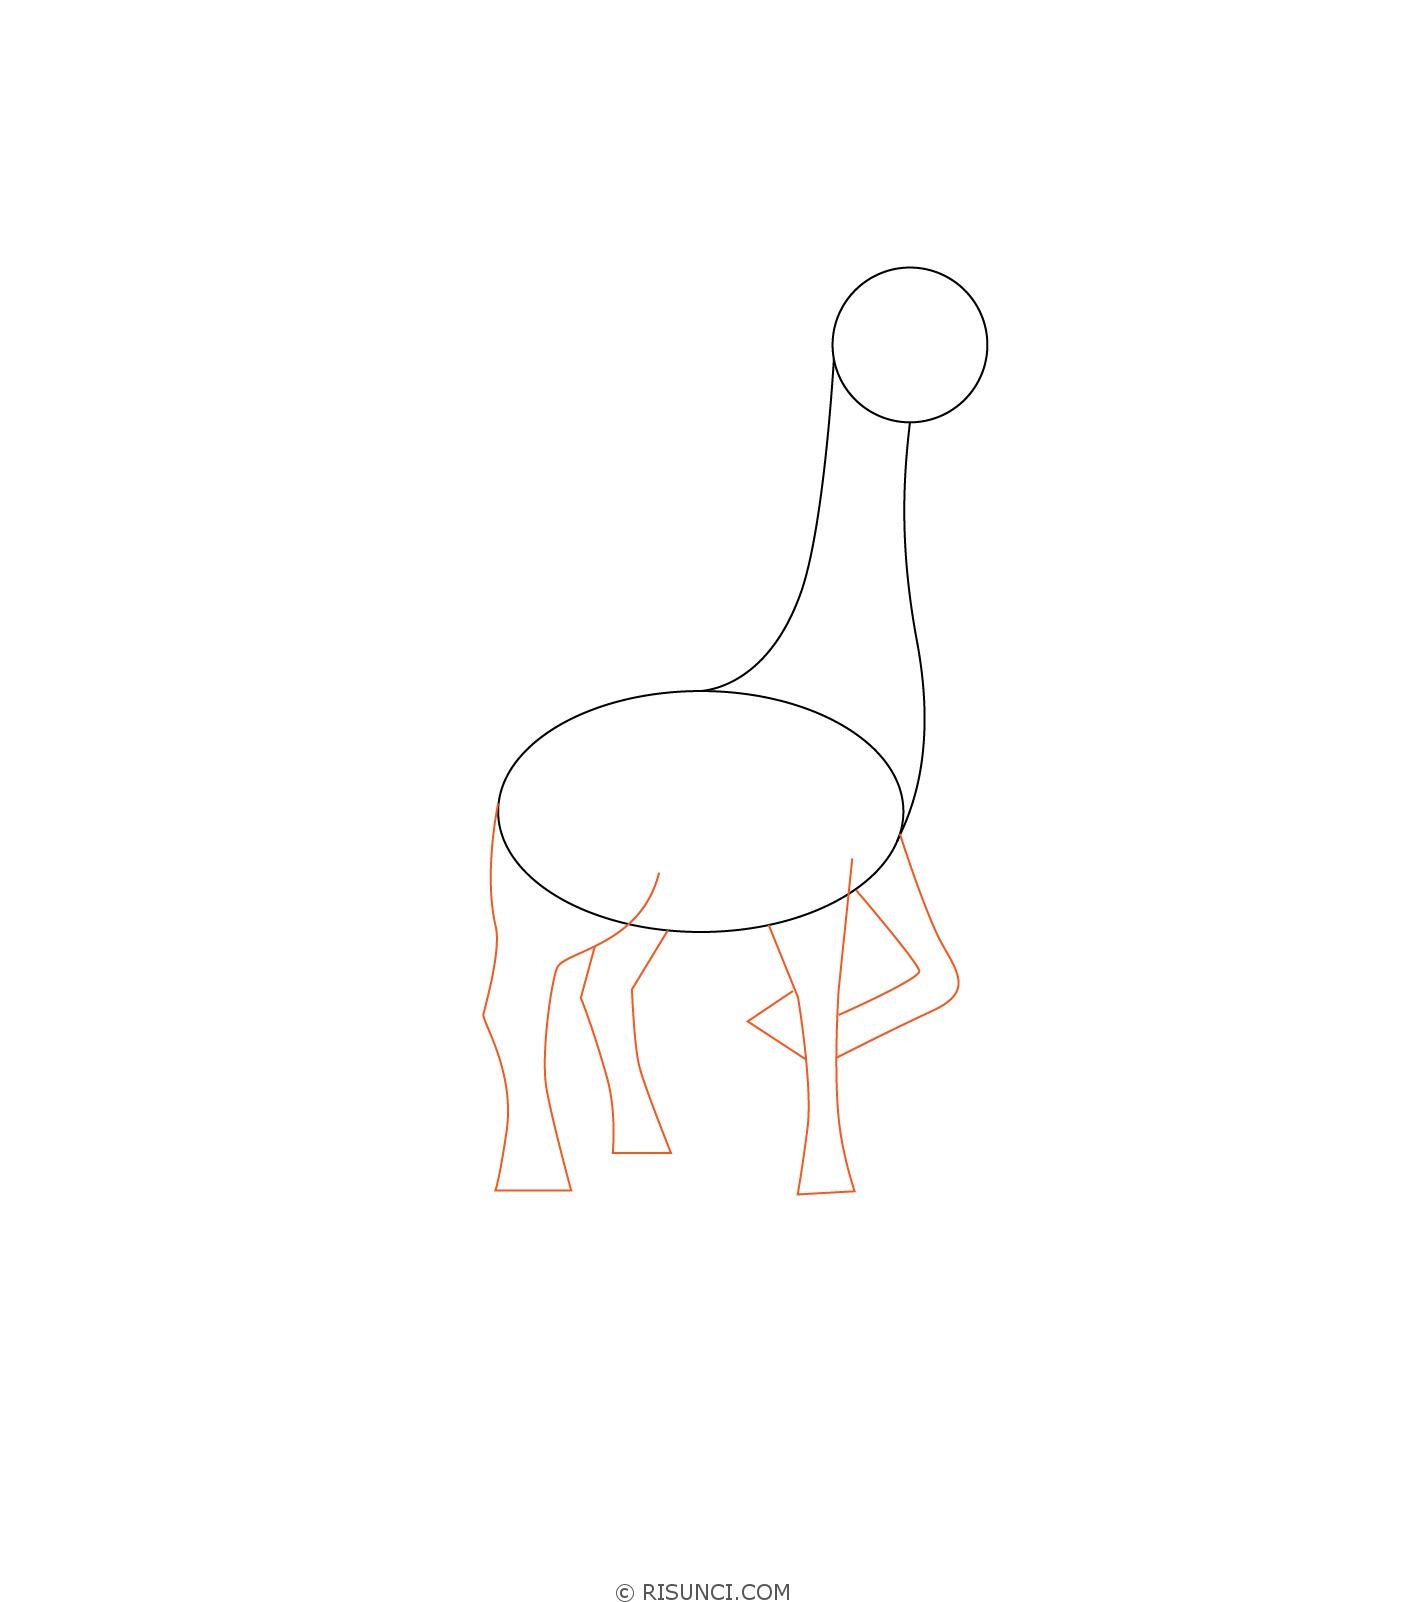 Рисунок жирафа для детей карандашом срисовать легко